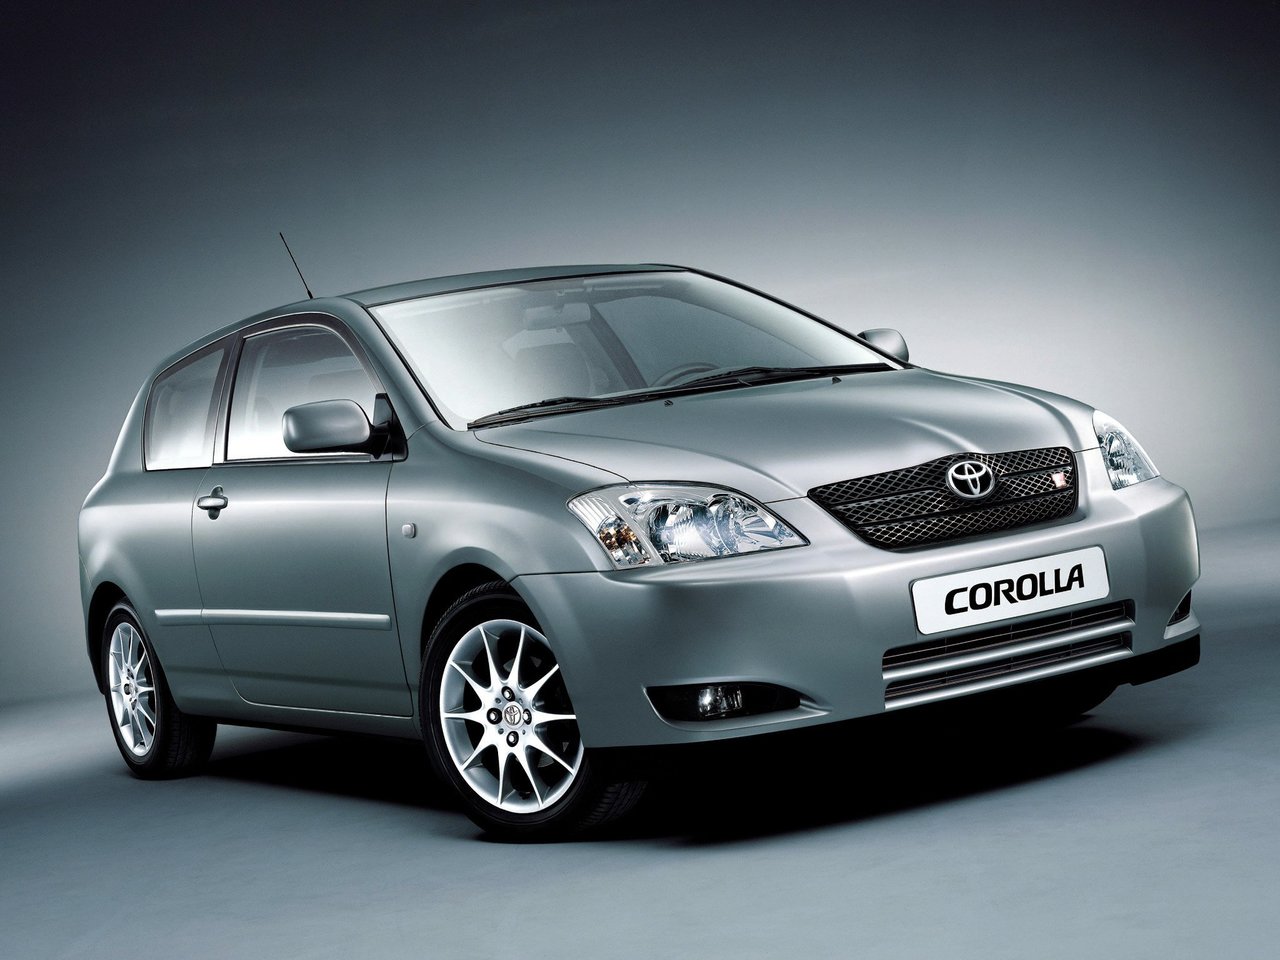 Расход газа семи комплектаций хэтчбека три двери Toyota Corolla. Разница стоимости заправки газом и бензином. Автономный пробег до и после установки ГБО.